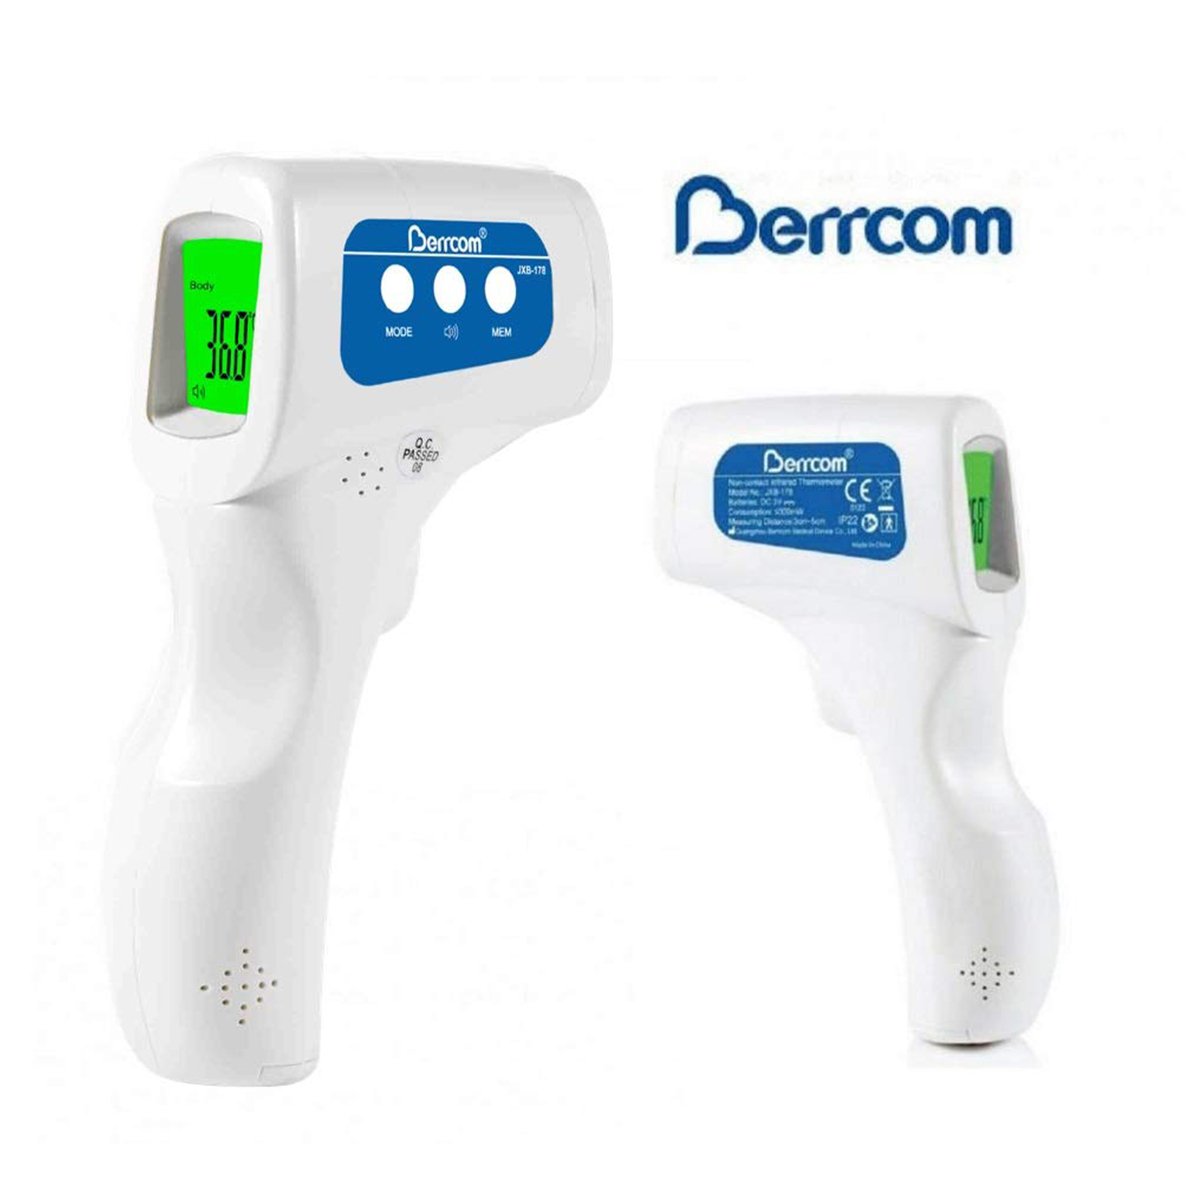 Berrcom Non Contact Infrared Thermometer JXB-178